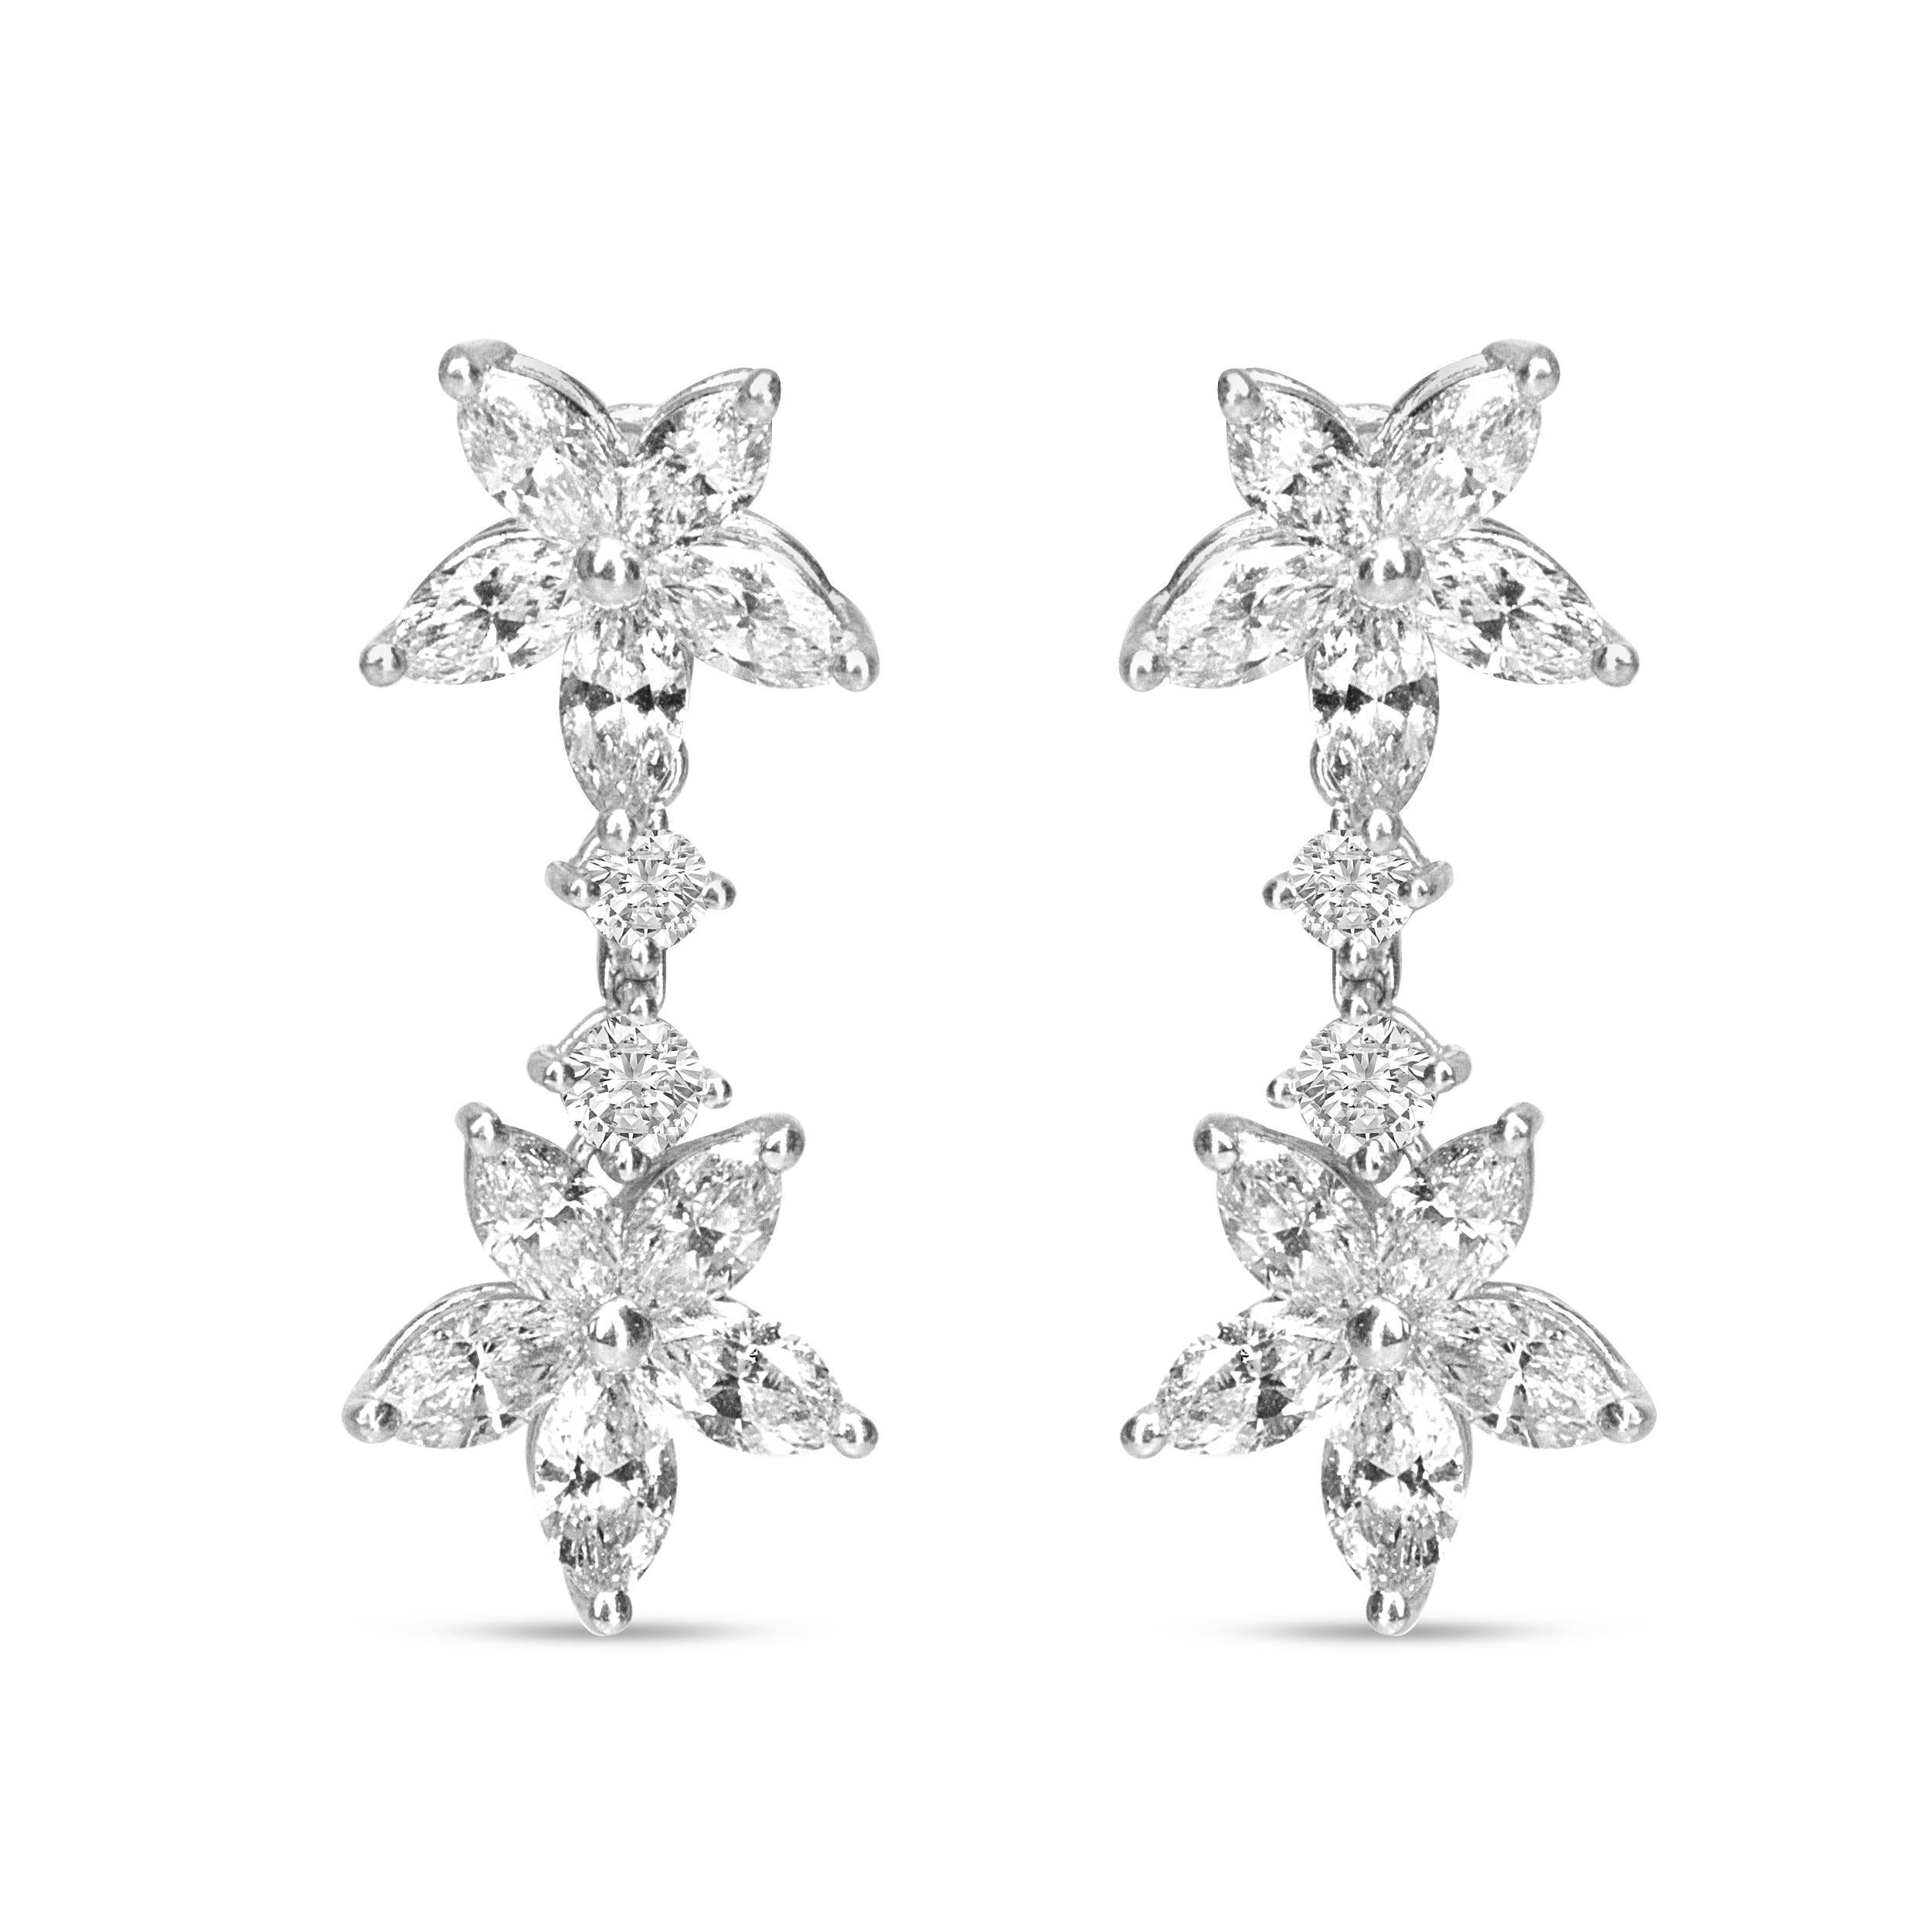 Ces ravissantes boucles d'oreilles pendantes à fleurs en diamant marquise sont élégamment féminines, conçues dans un design inspiré du travail artistique de Mère Nature. Des diamants marquises scintillants, sertis à la griffe, forment la base de